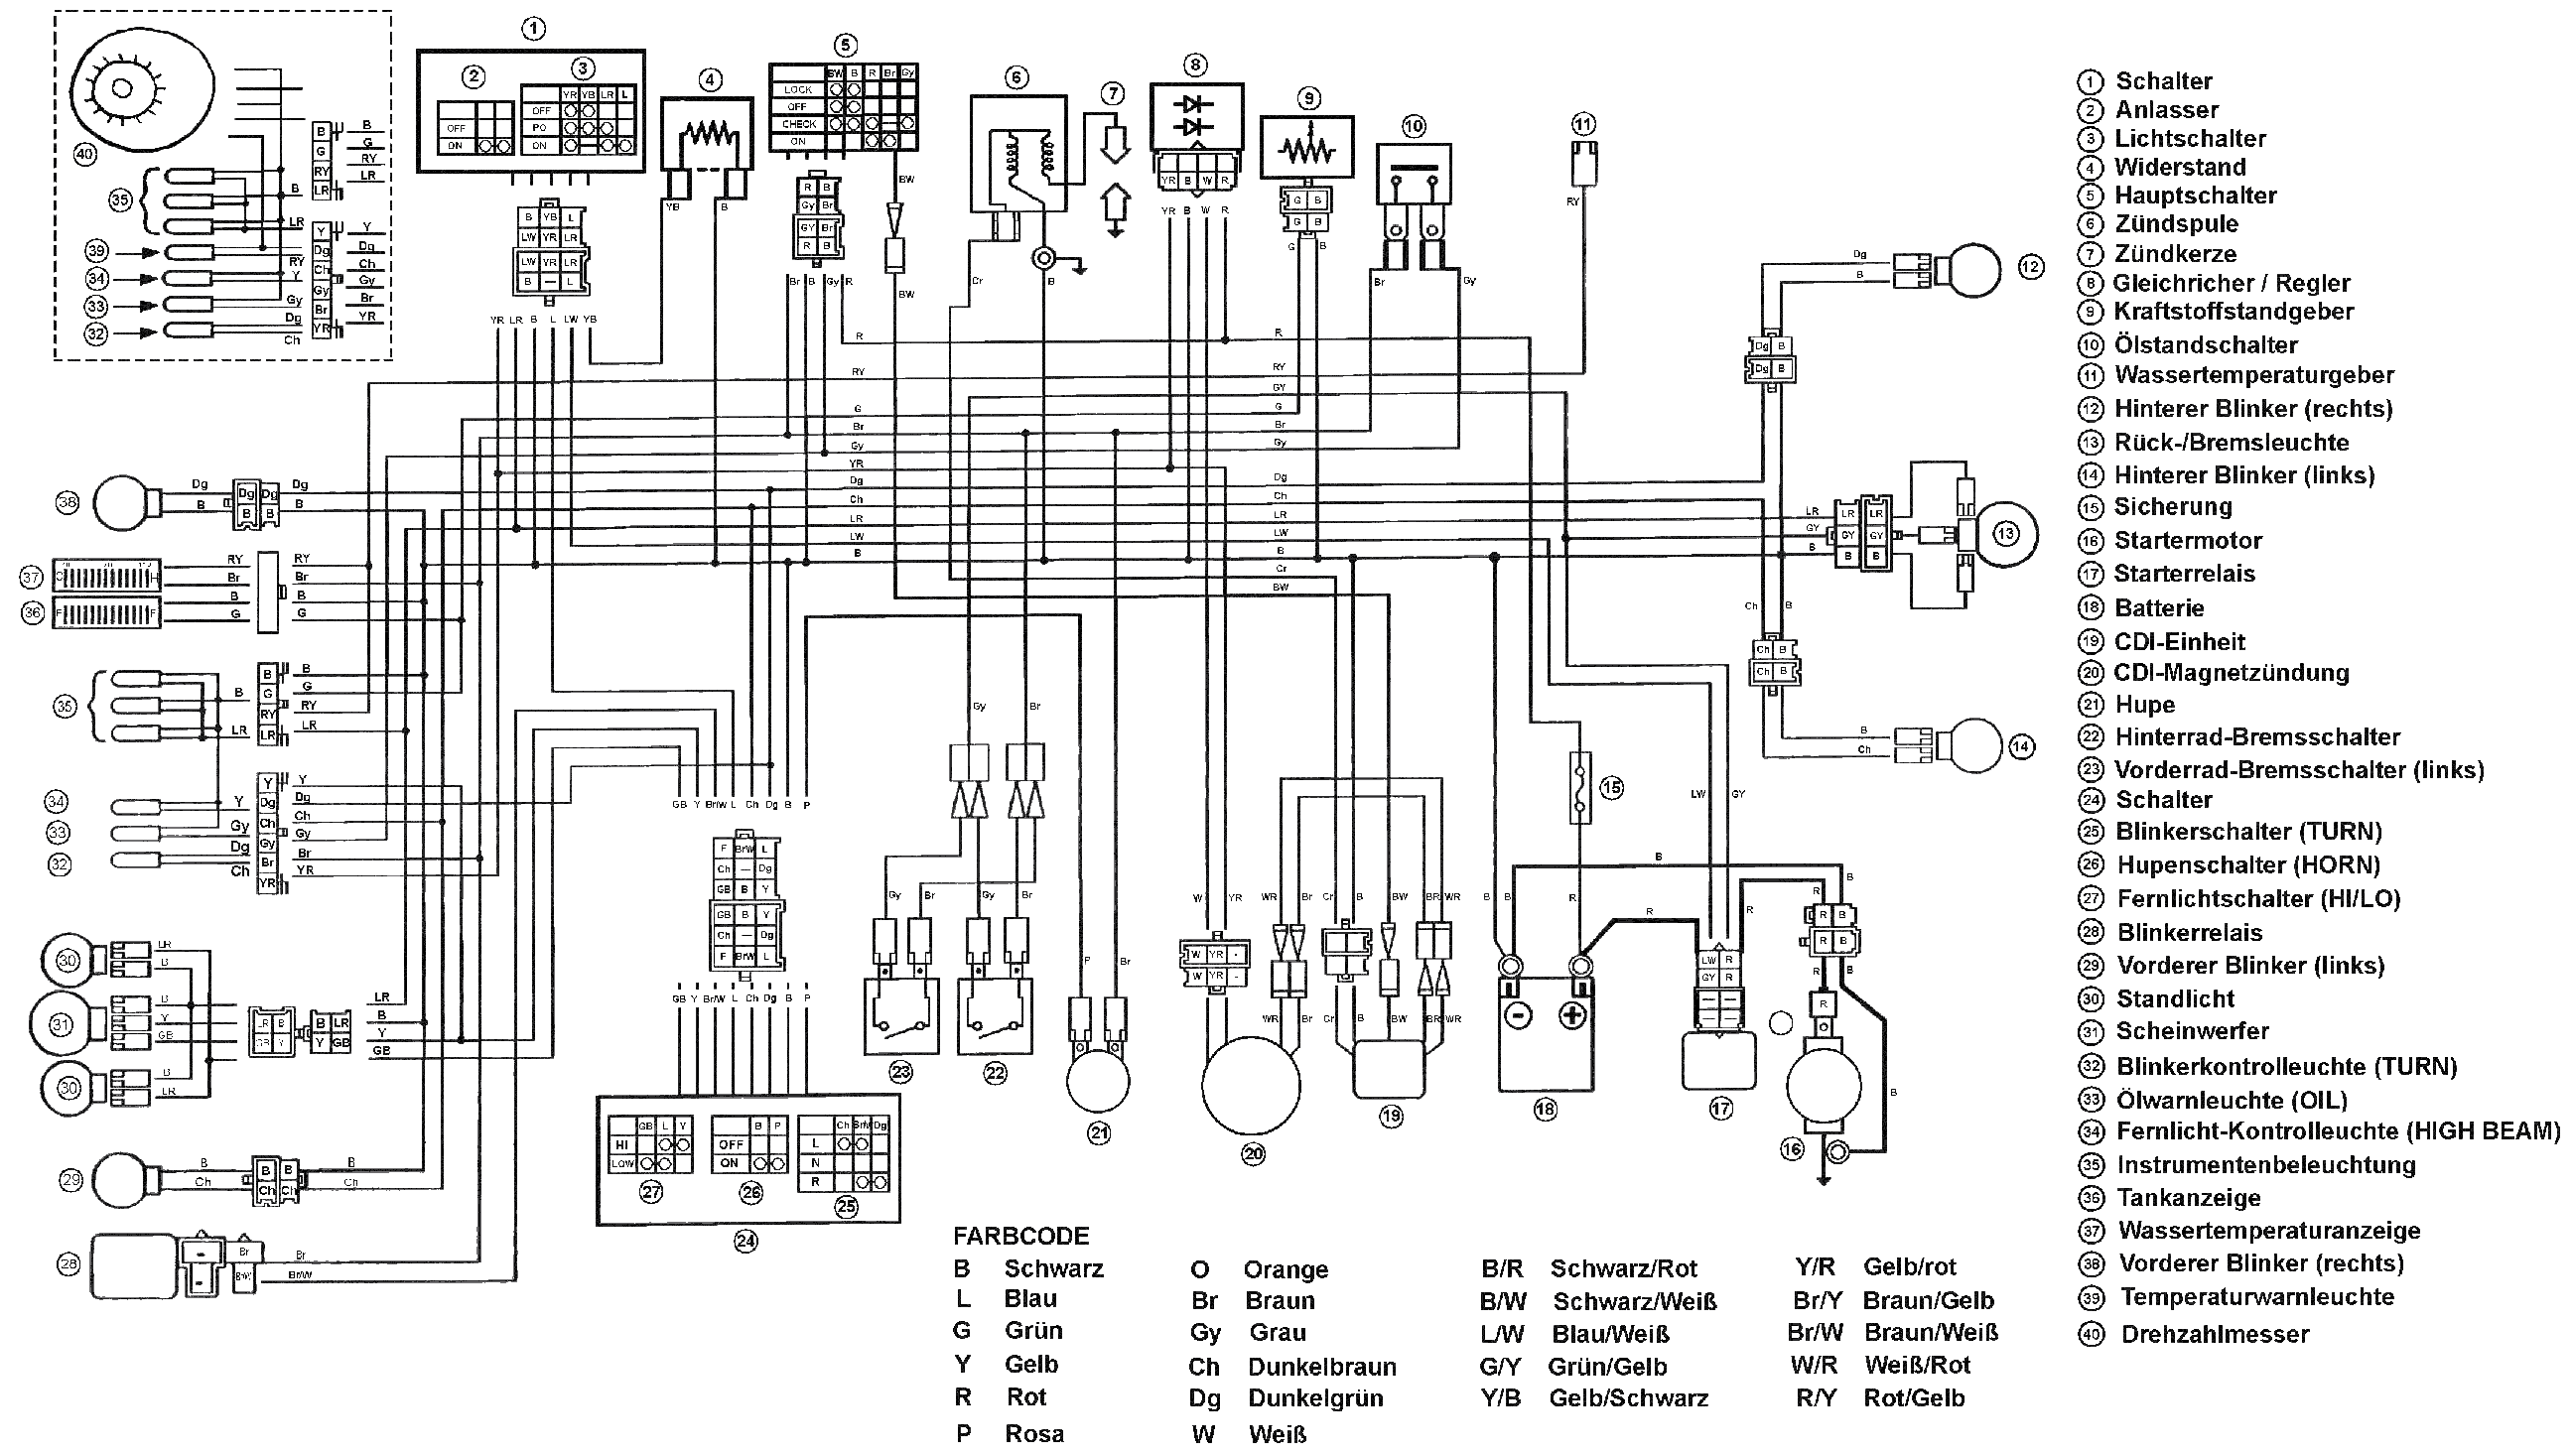 Схема зажигания скутера. электрическая схема проводки китайского скутера 4т 125 и 150 cc